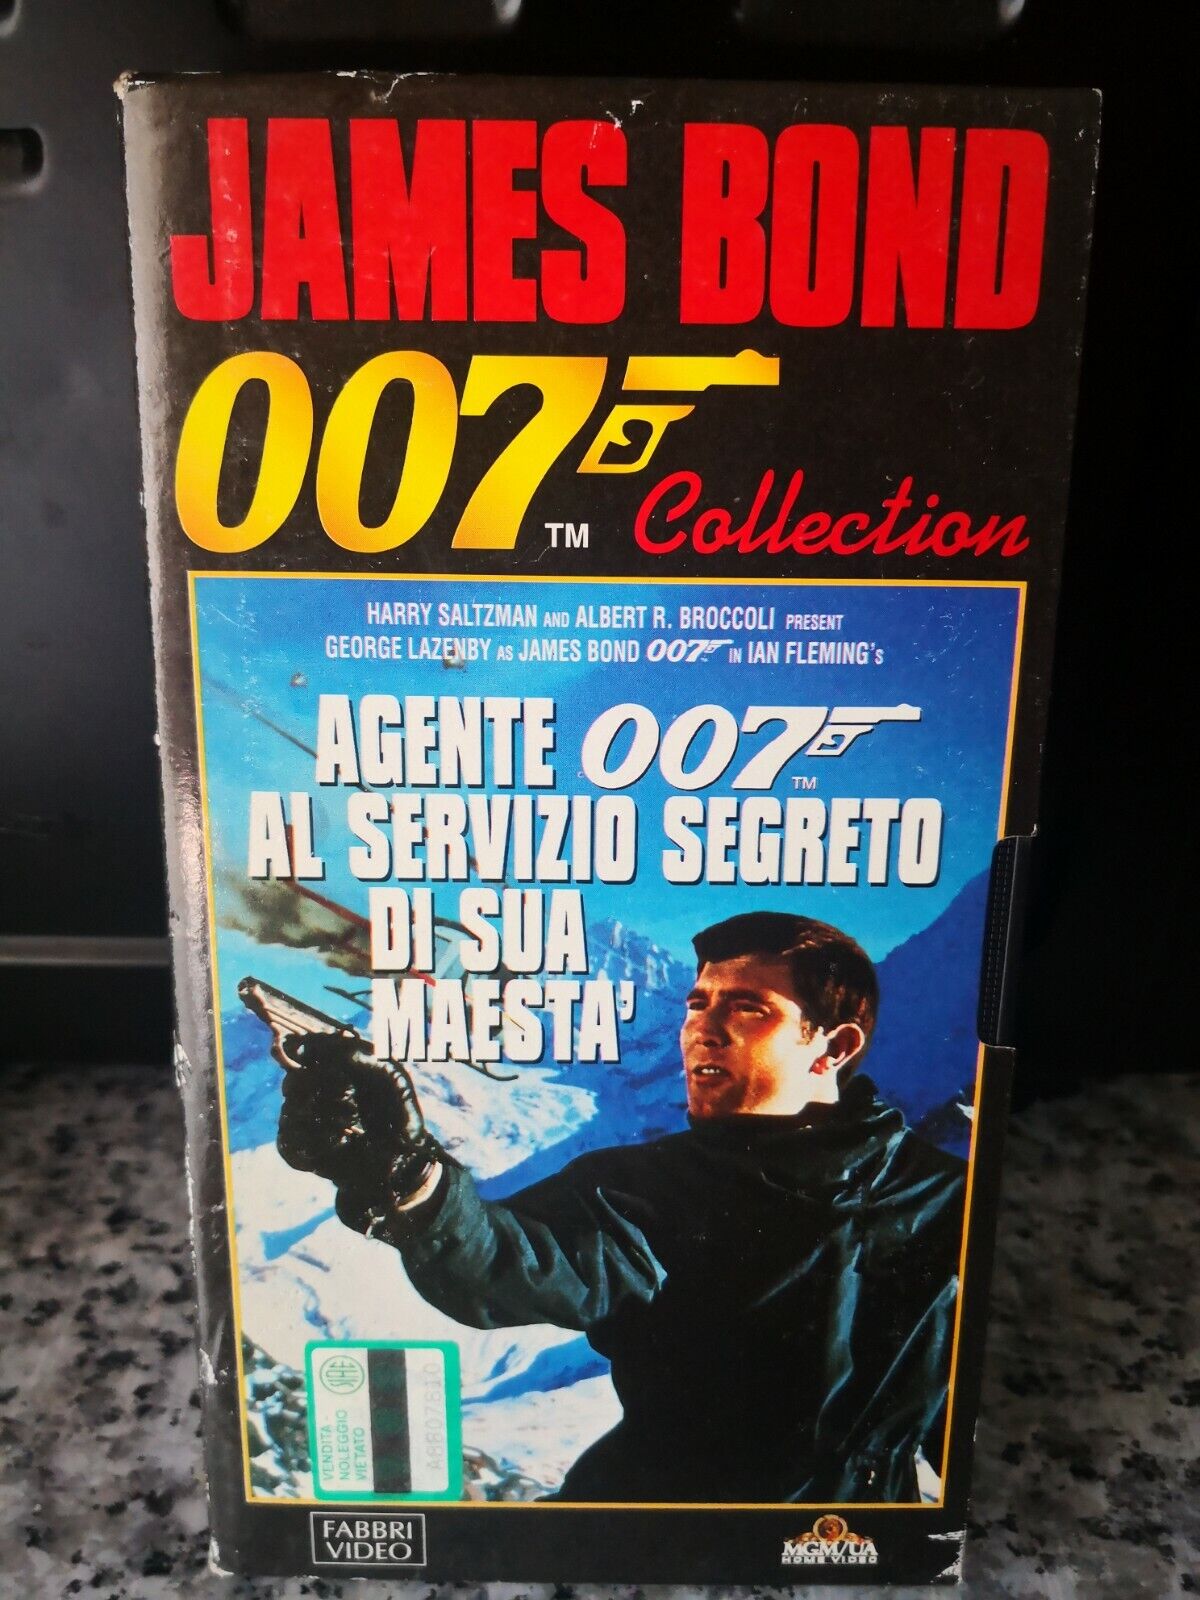 007 - Al servizio segreto di sua maest? - vhs -1996 - Fabbri video -F